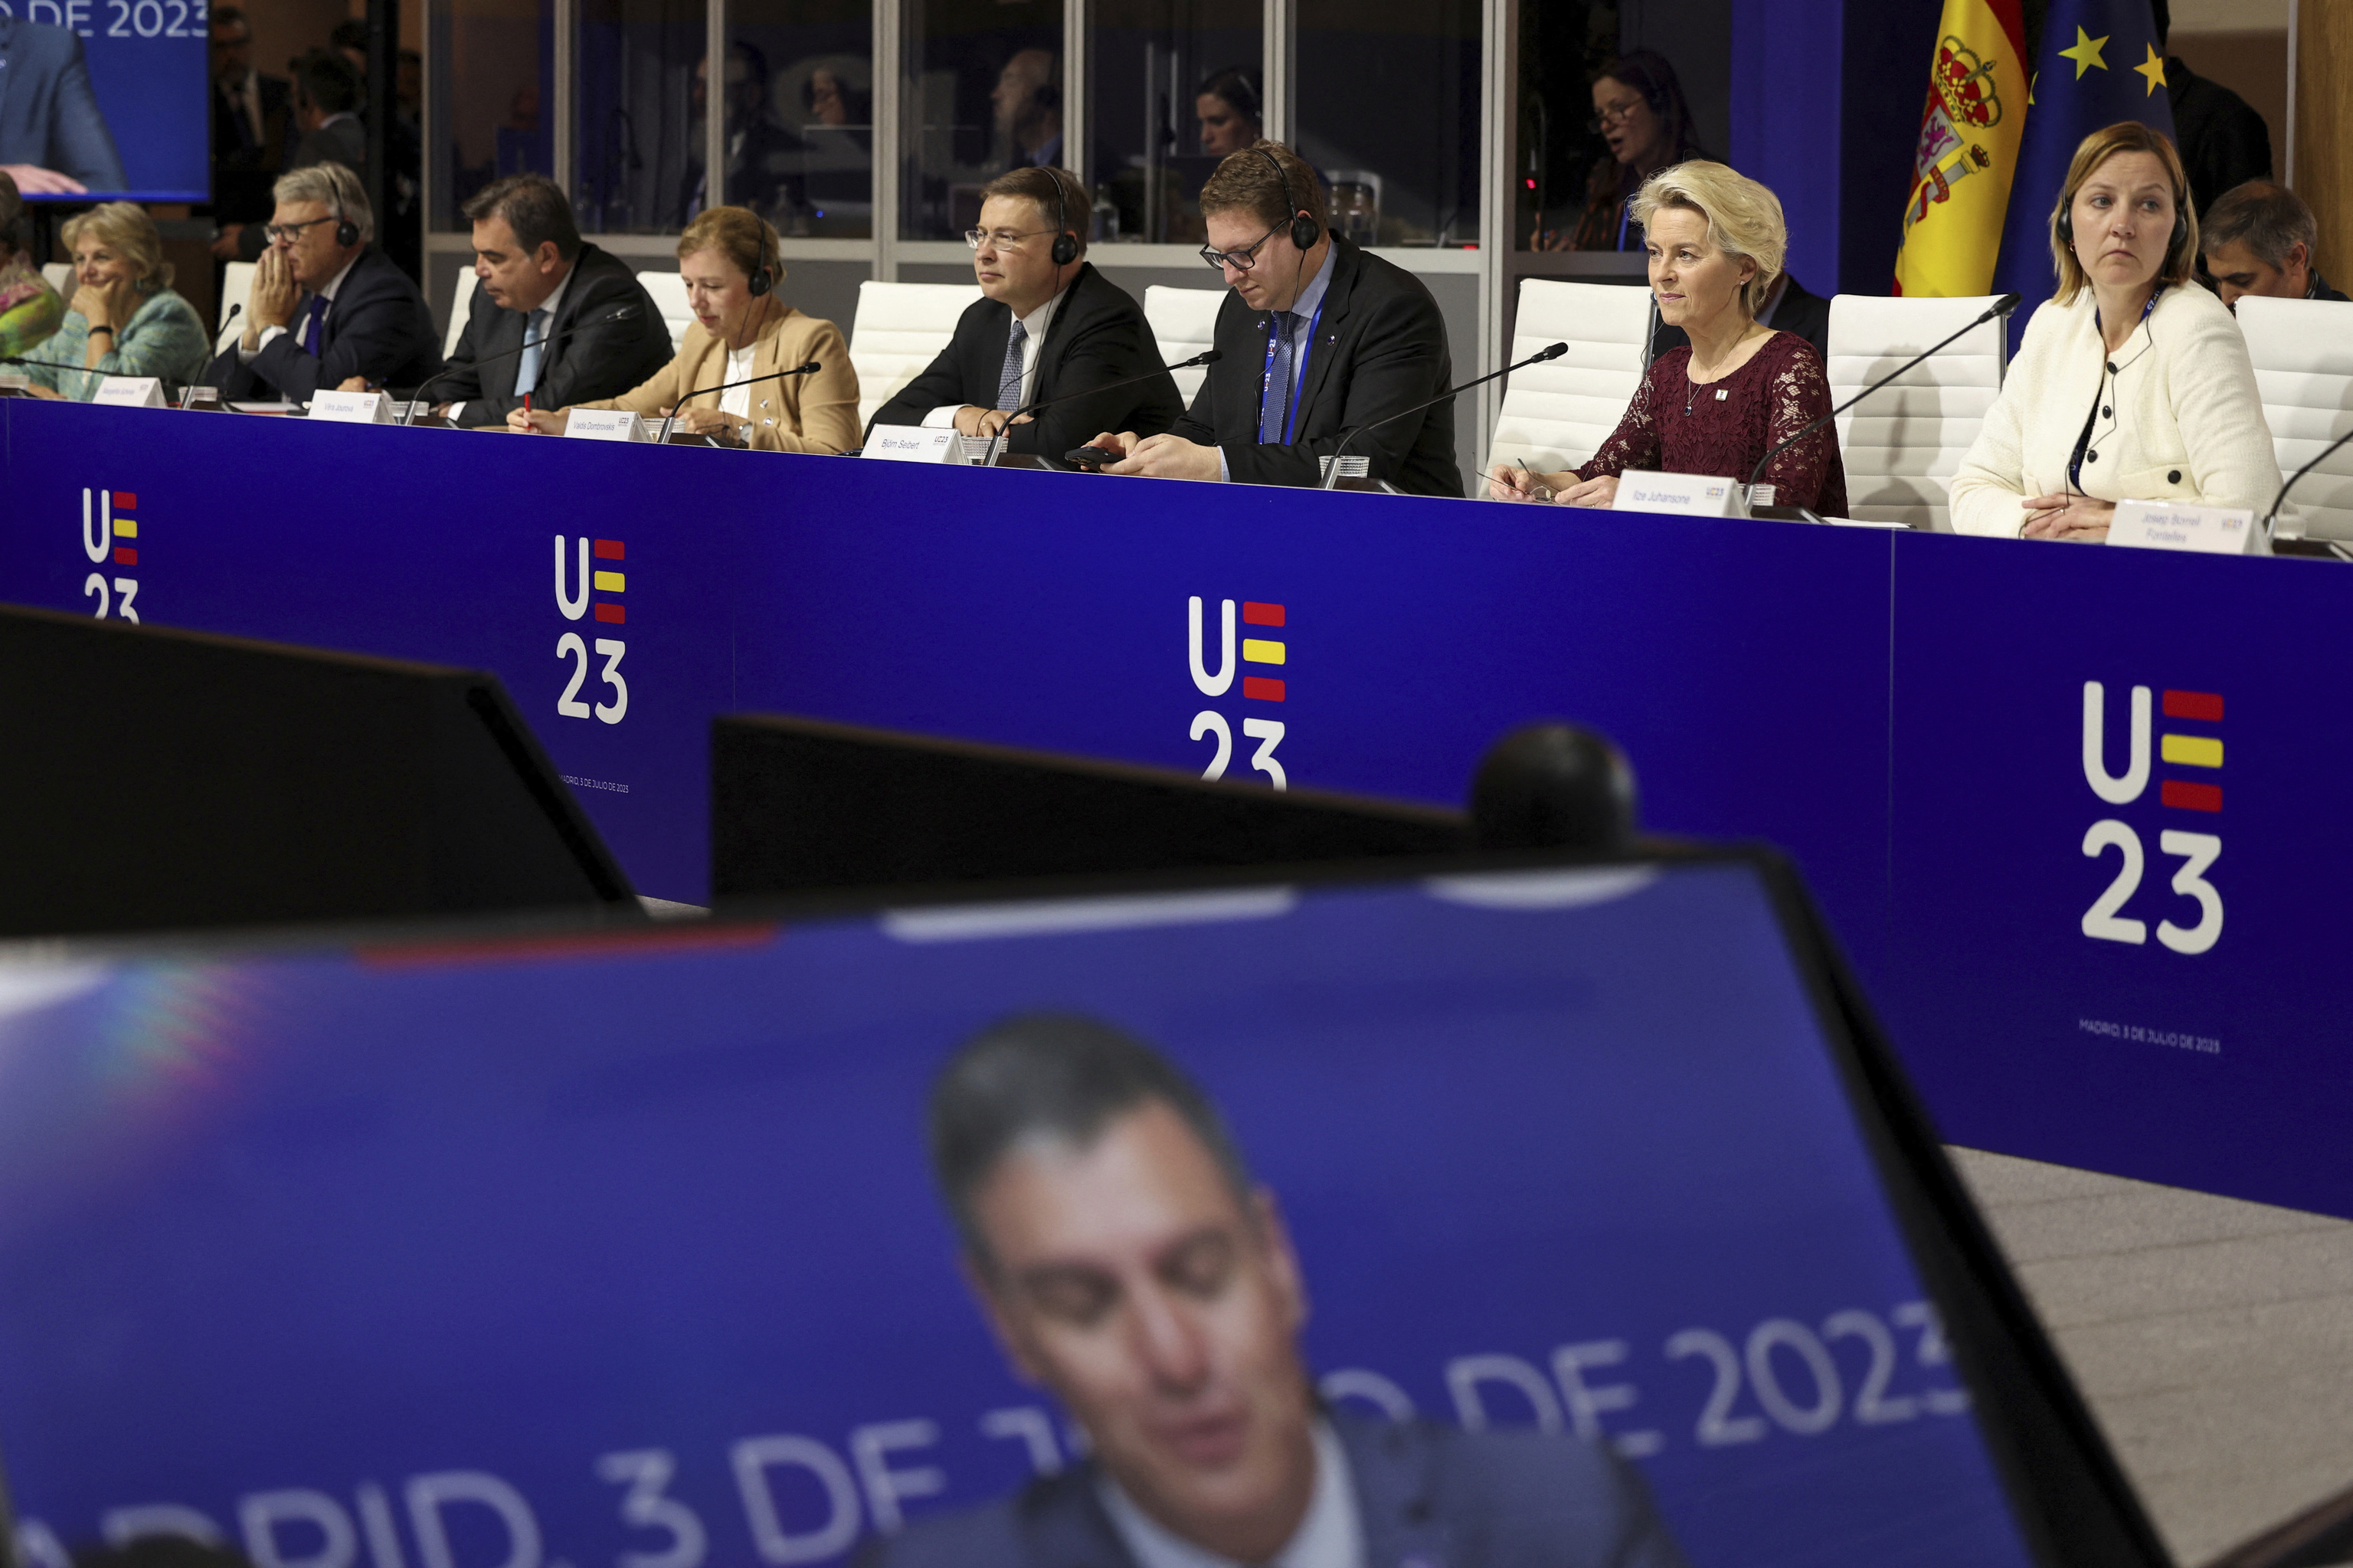 Pedro Snchez, visto en pantalla en una reunin en el arranque de la Presidencia espaola de la UE.